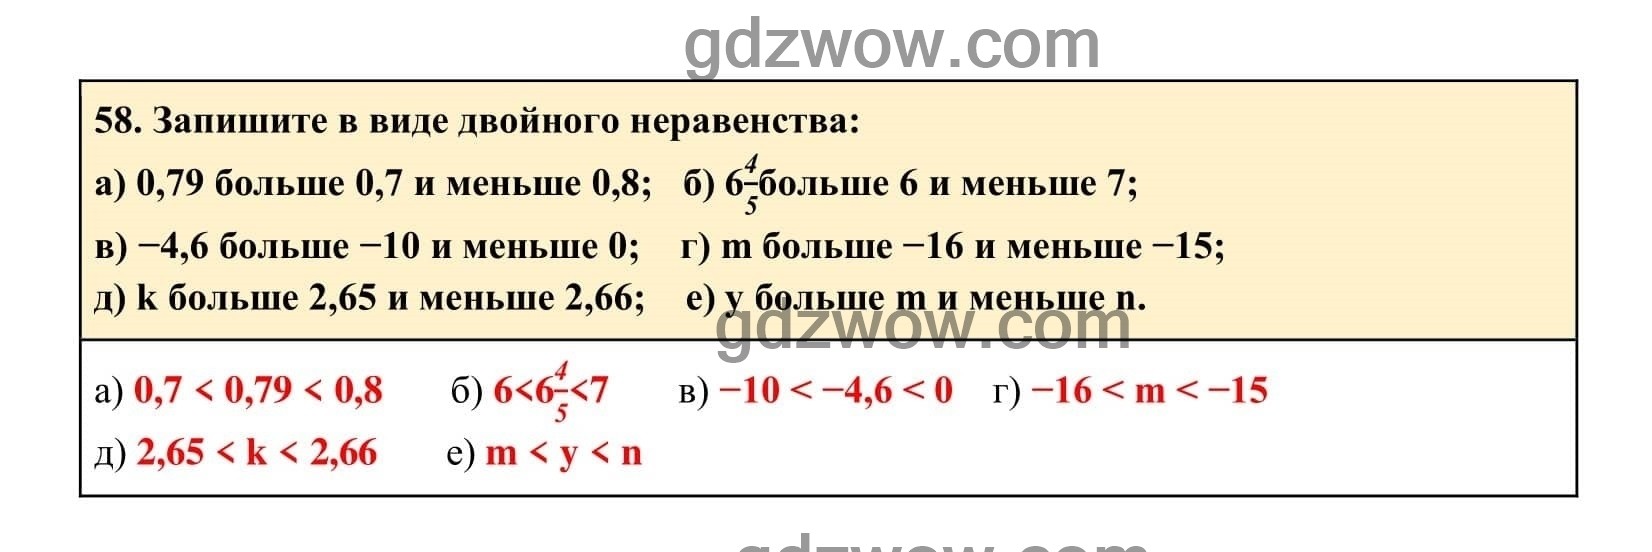 Упражнение 58 - ГДЗ по Алгебре 7 класс Учебник Макарычев (решебник) - GDZwow